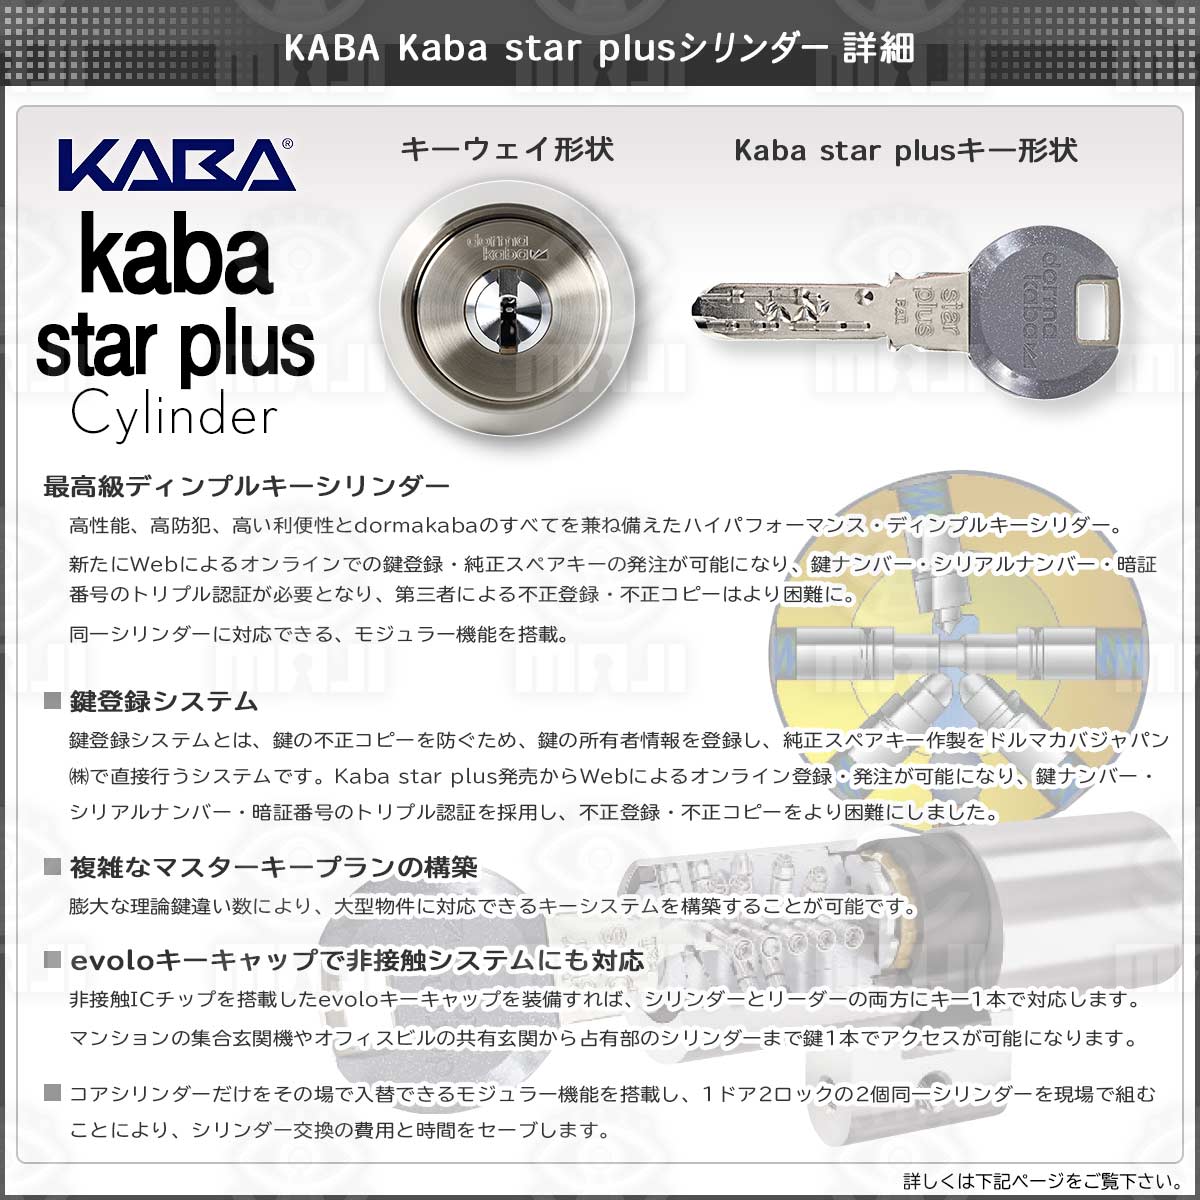 18179円 【限定販売】 Kaba star plus カバスタープラス8700E 戸先鎌錠鍵 カギ 交換 取替